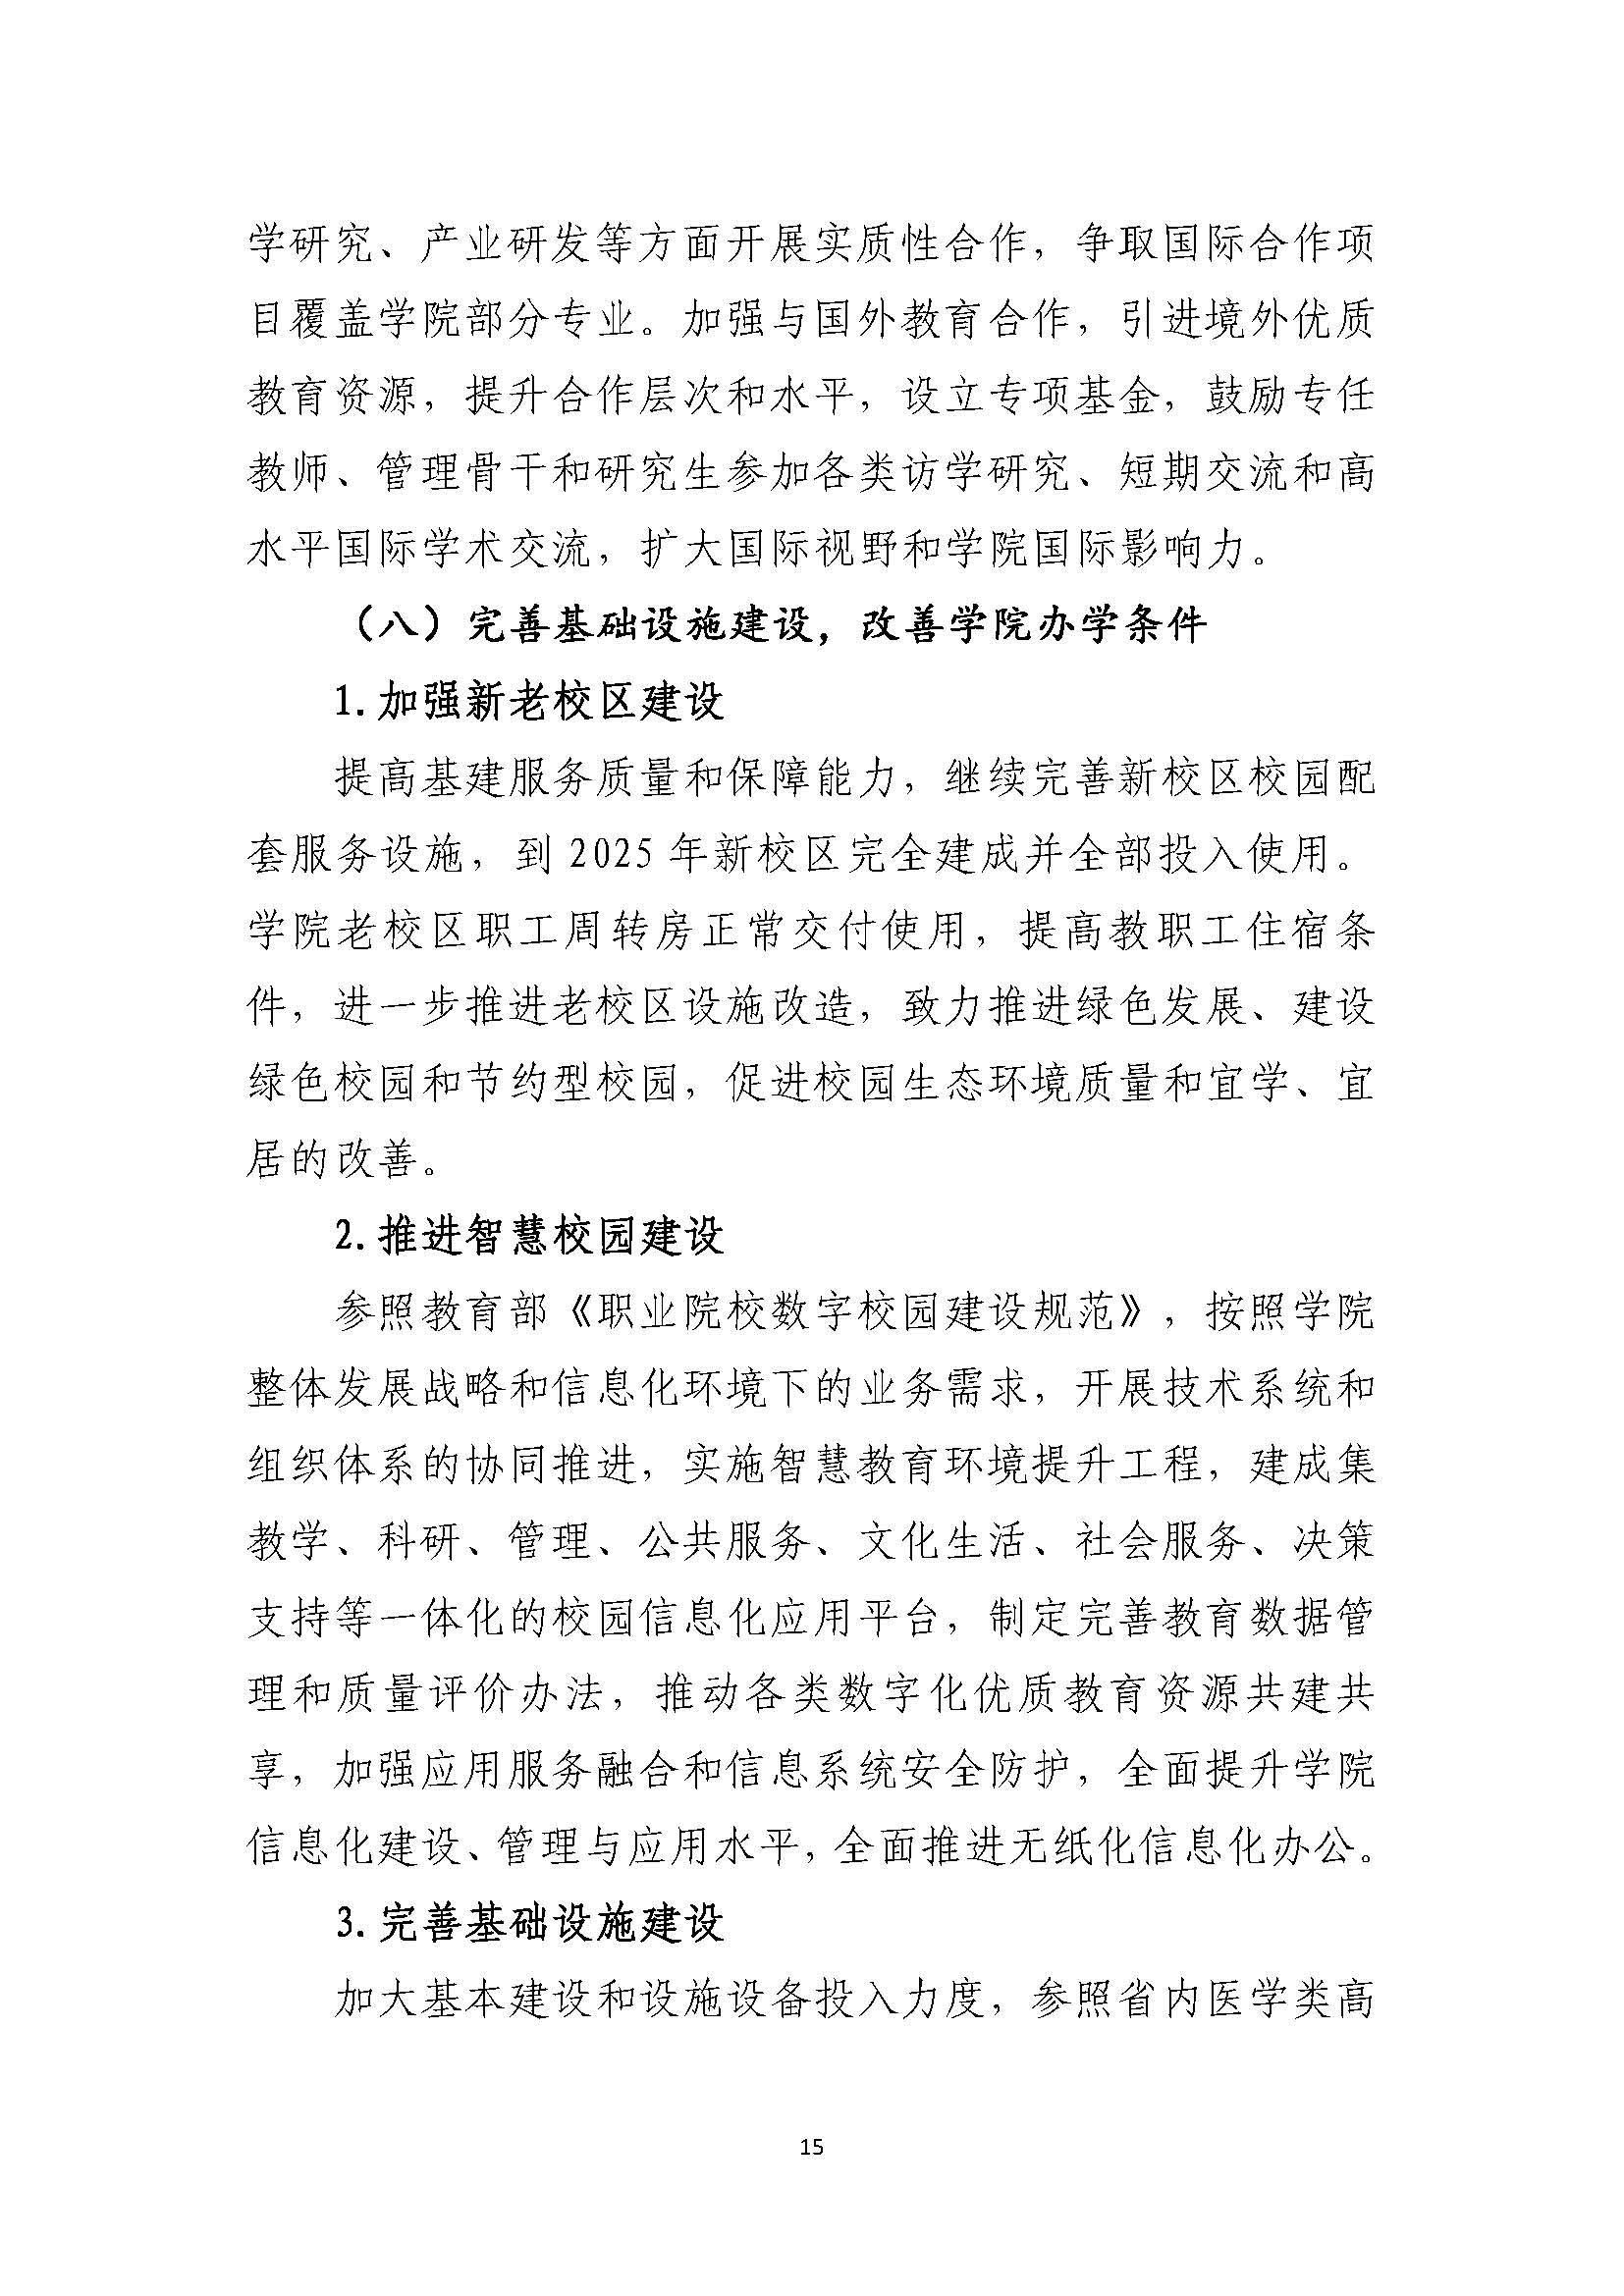 郑州黄河护理职业学院2021-2025年发展规划_页面_15.jpg